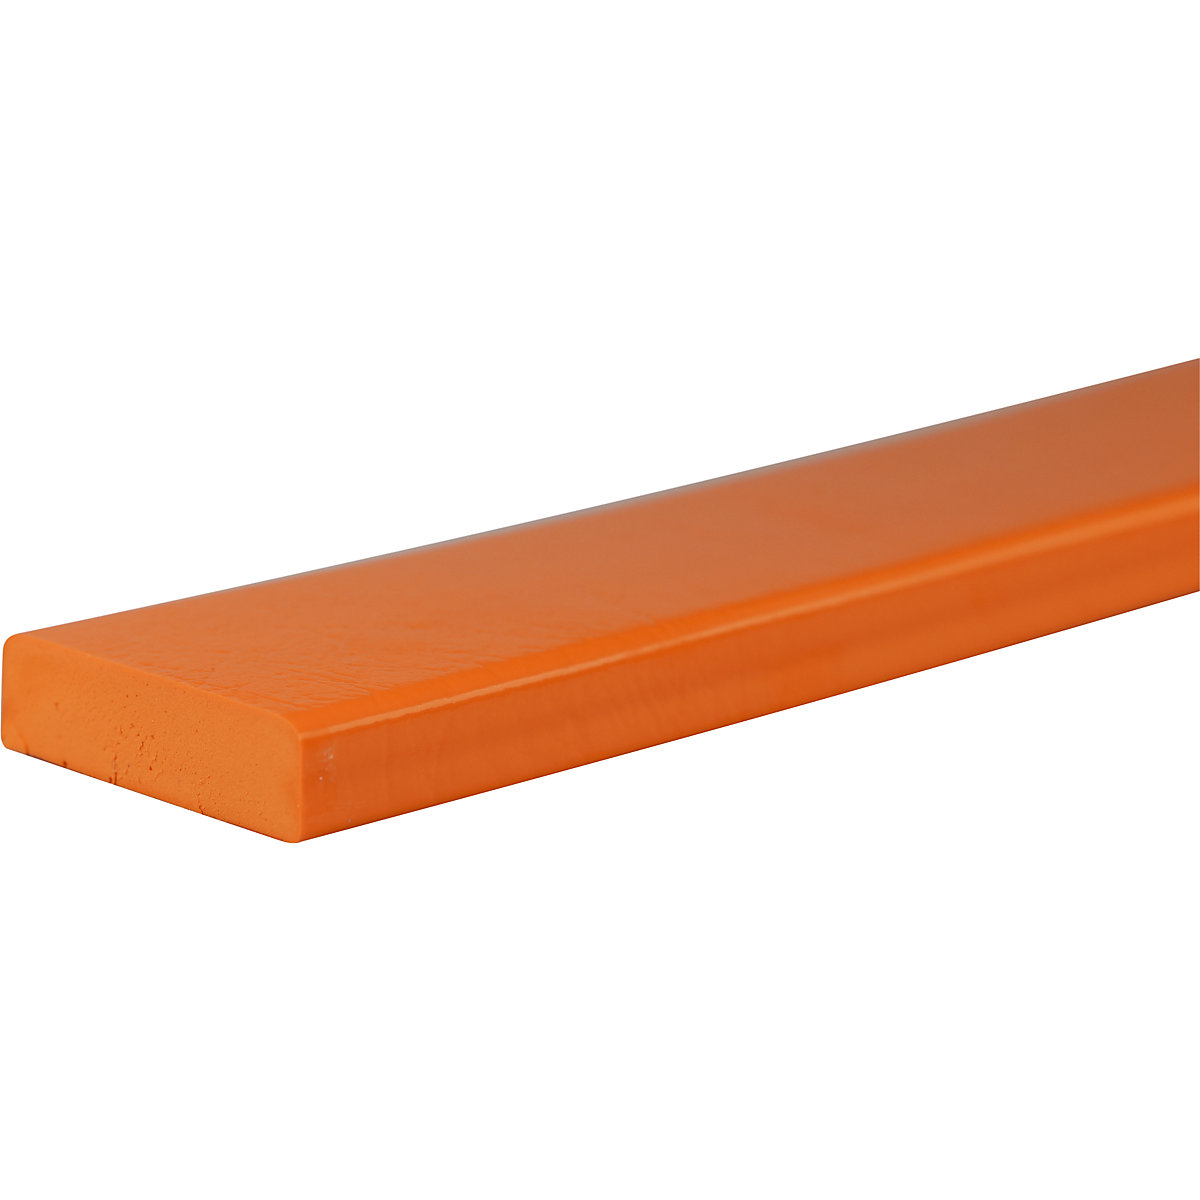 Knuffi®-oppervlaktebescherming – SHG, type S, stuk van 1 m, oranje-31